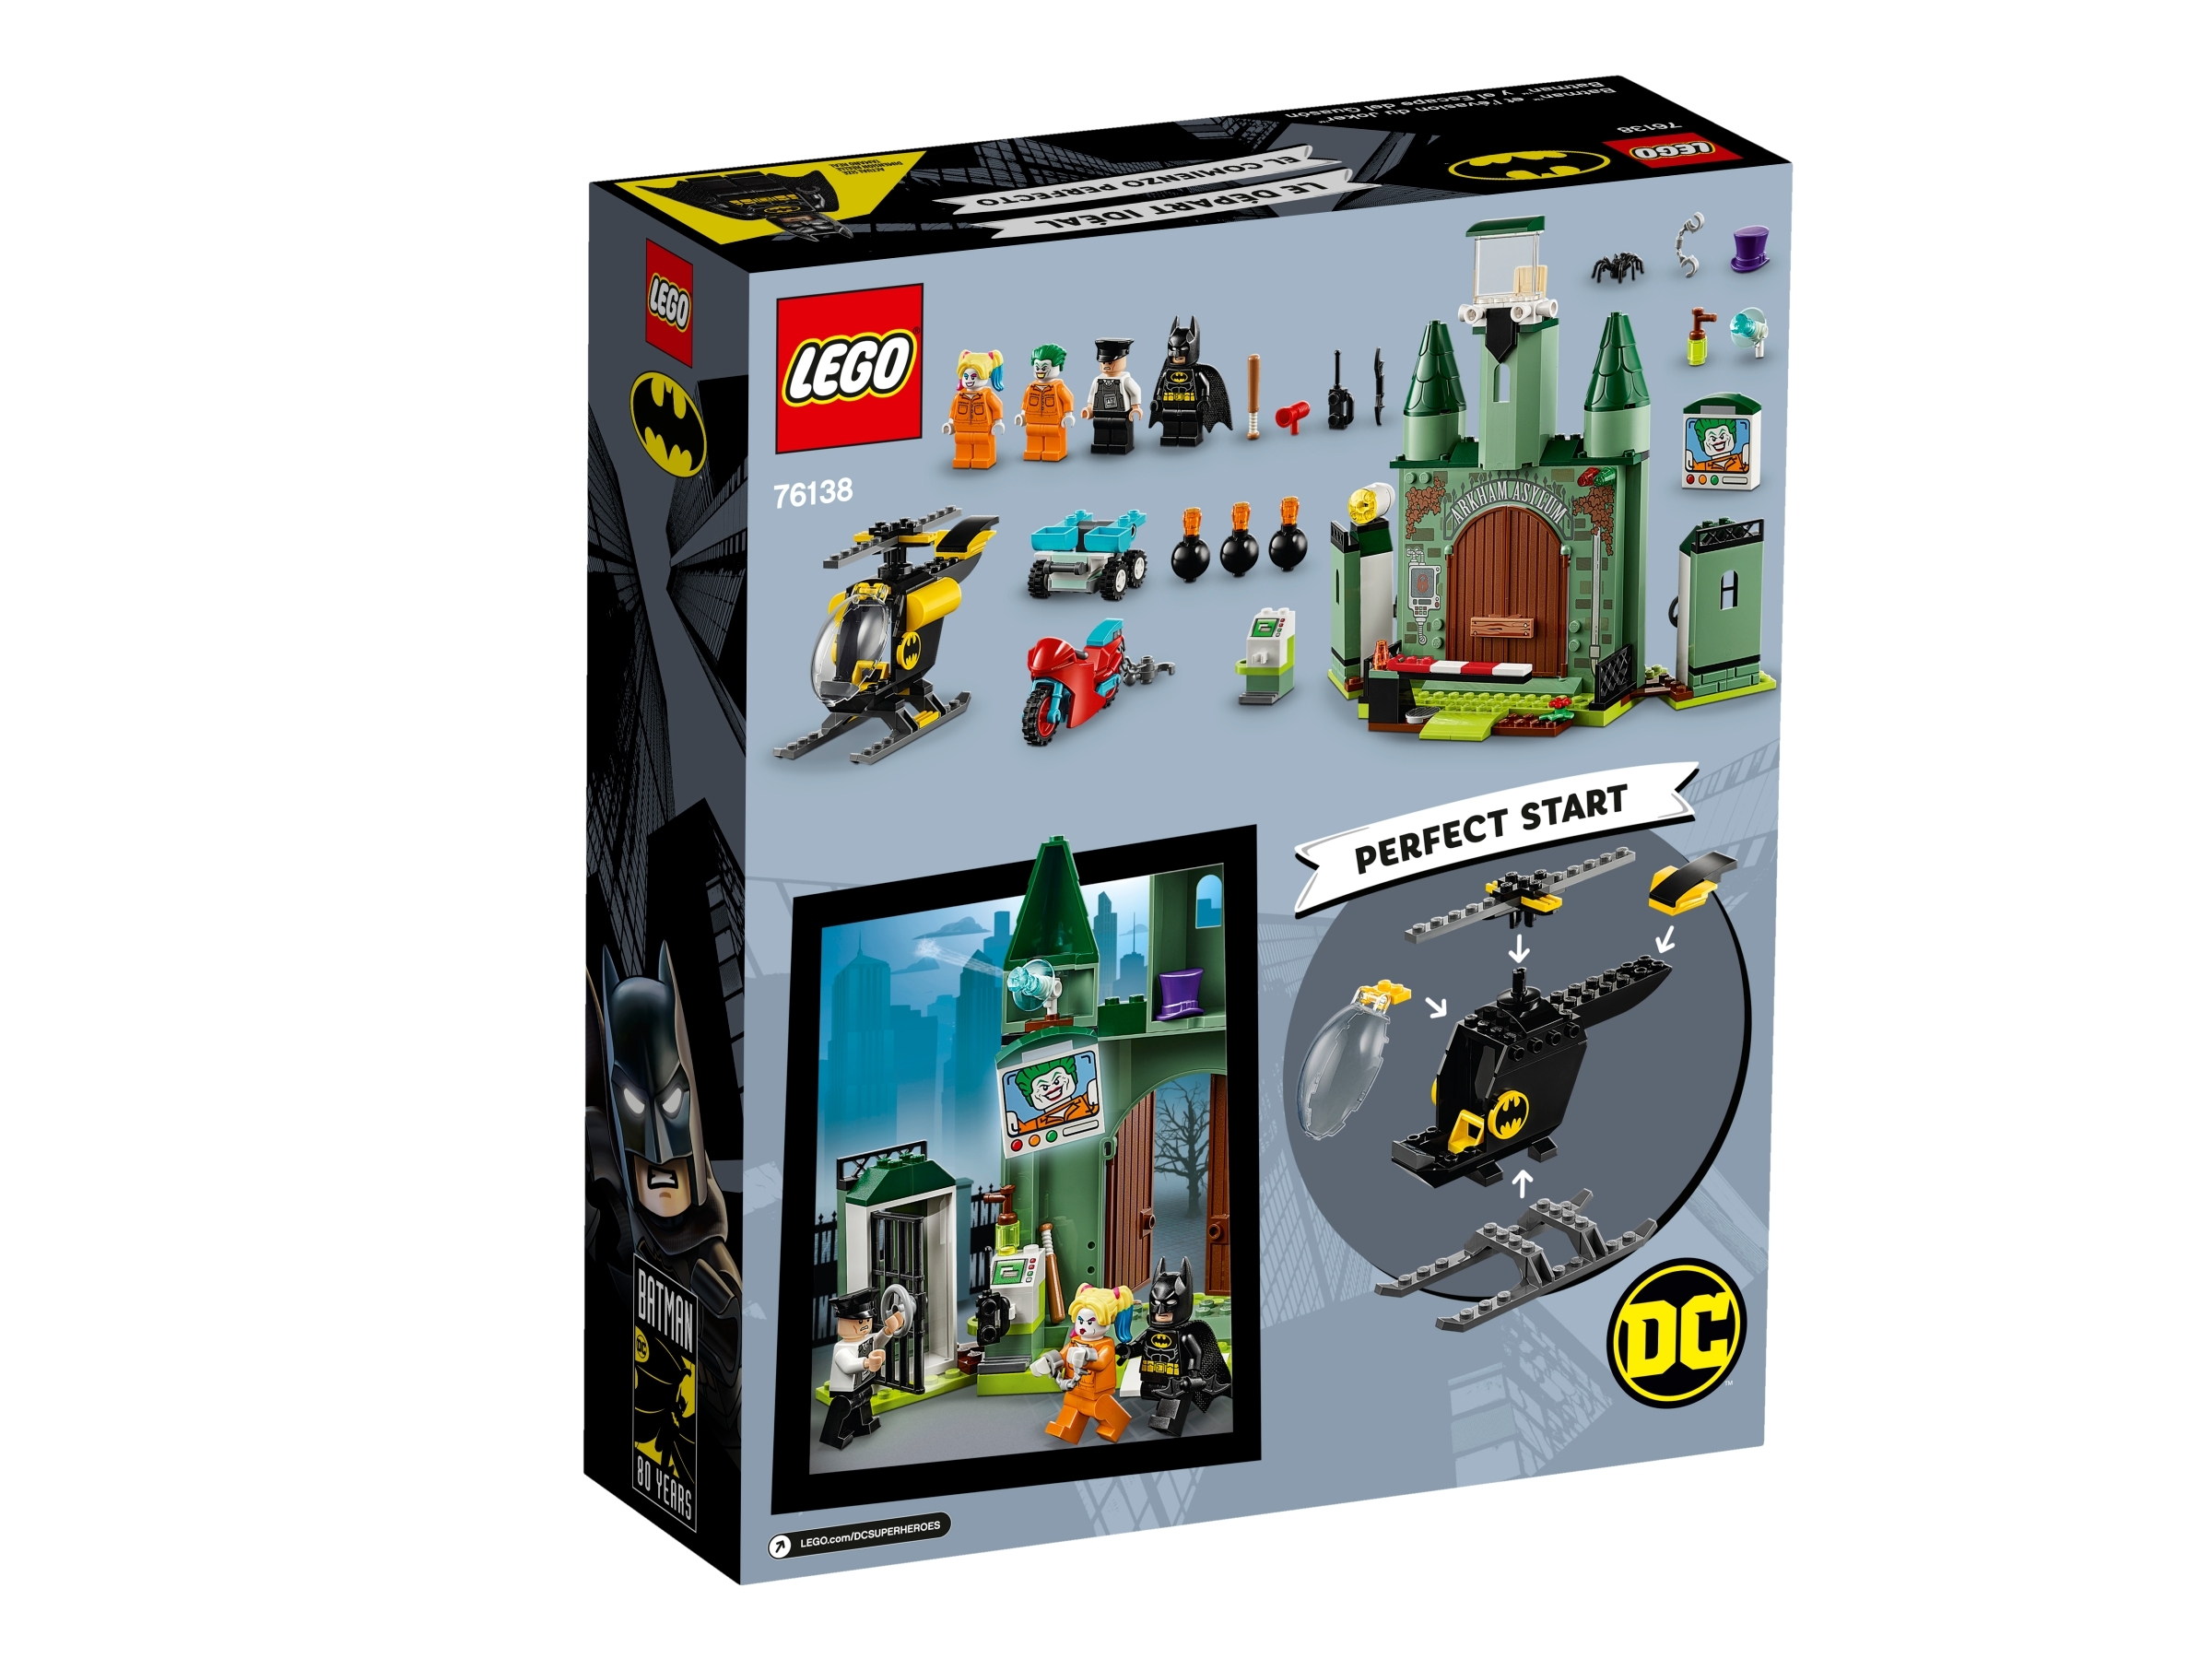 Lego Prison Guard Minifigure 76138 Batman and The Joker Escape SH600 NEW 